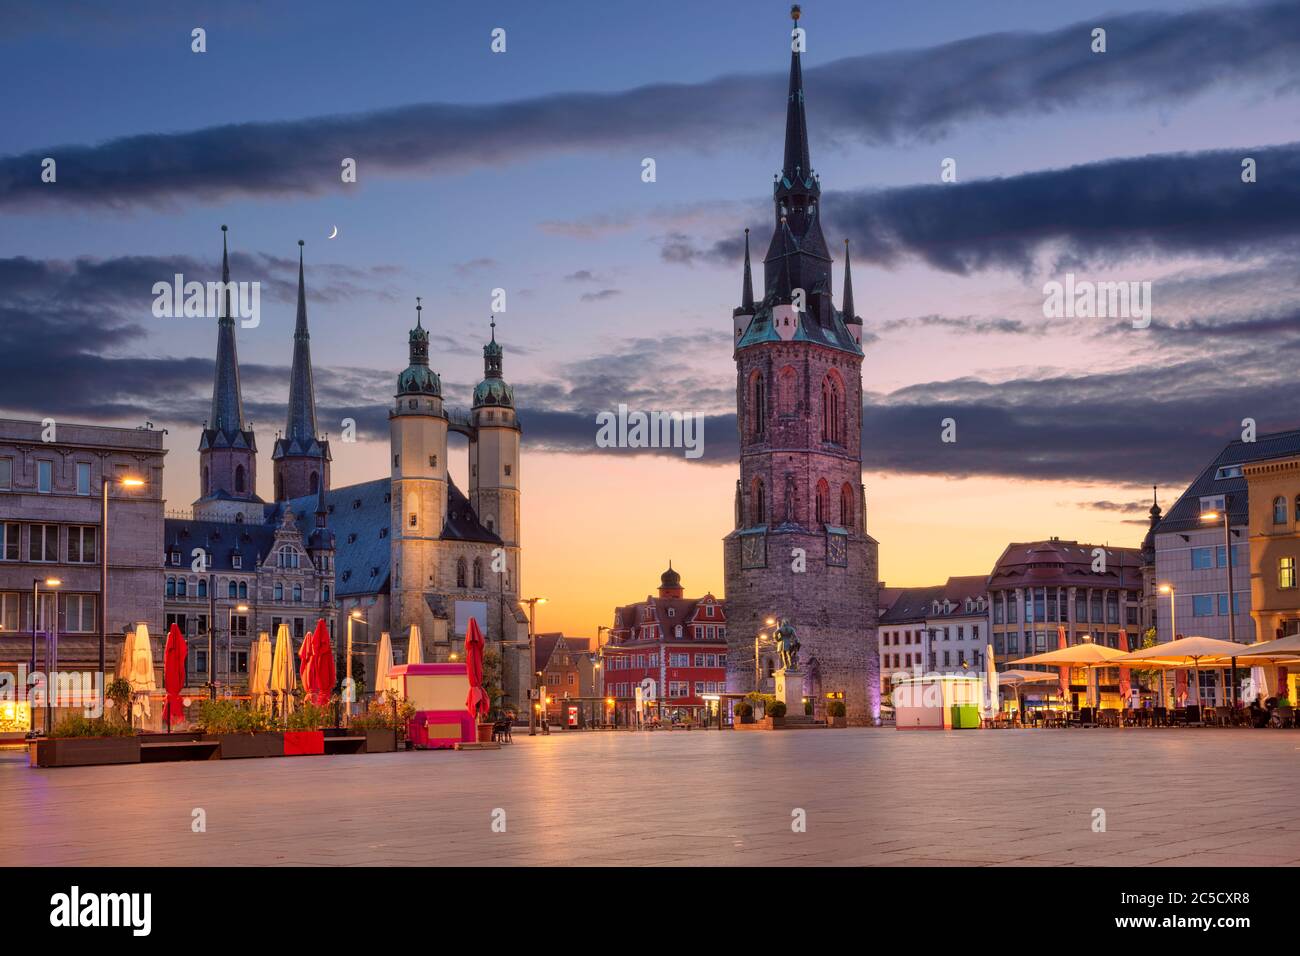 Halle, Allemagne. Image de paysage urbain du centre-ville historique de Halle (Saale) avec la Tour Rouge et la place du marché pendant un coucher de soleil spectaculaire. Banque D'Images